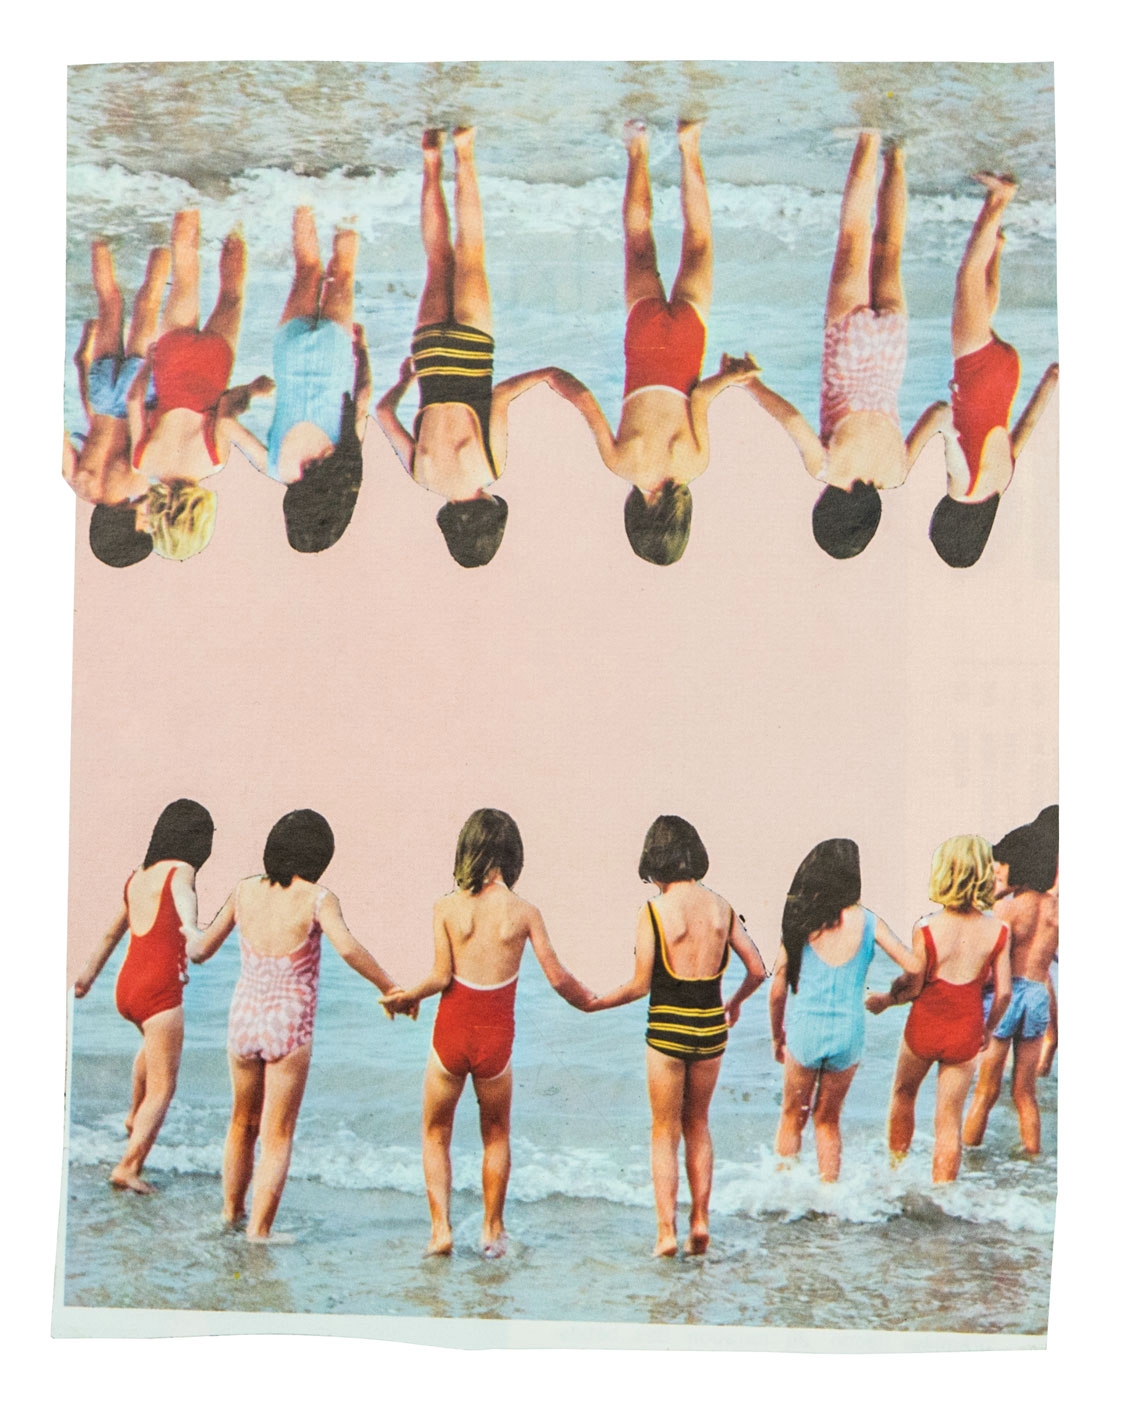  Dziewczynki 18 x 14 cm Collage sur papier 2017 